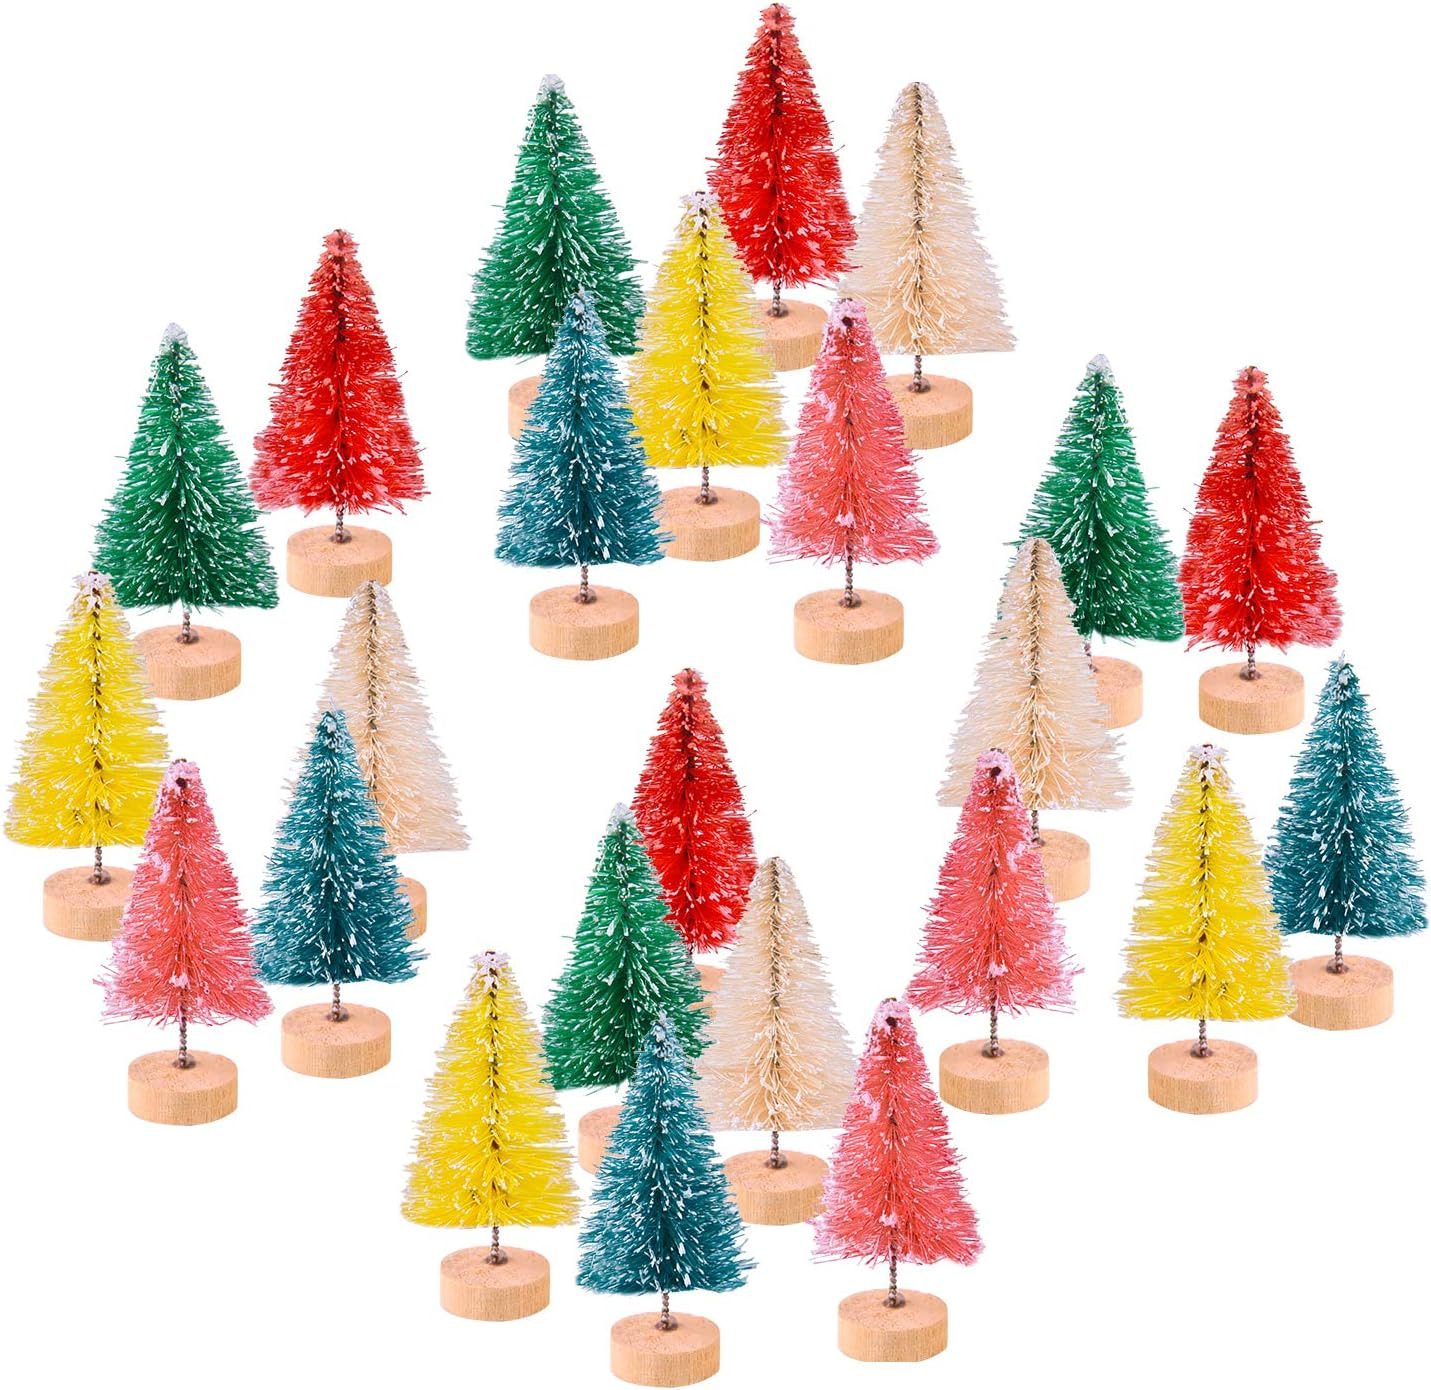 KUUQA 24Pcs Mini Sisal Trees Bottle Brush Trees Mini Christmas Trees Pine Trees